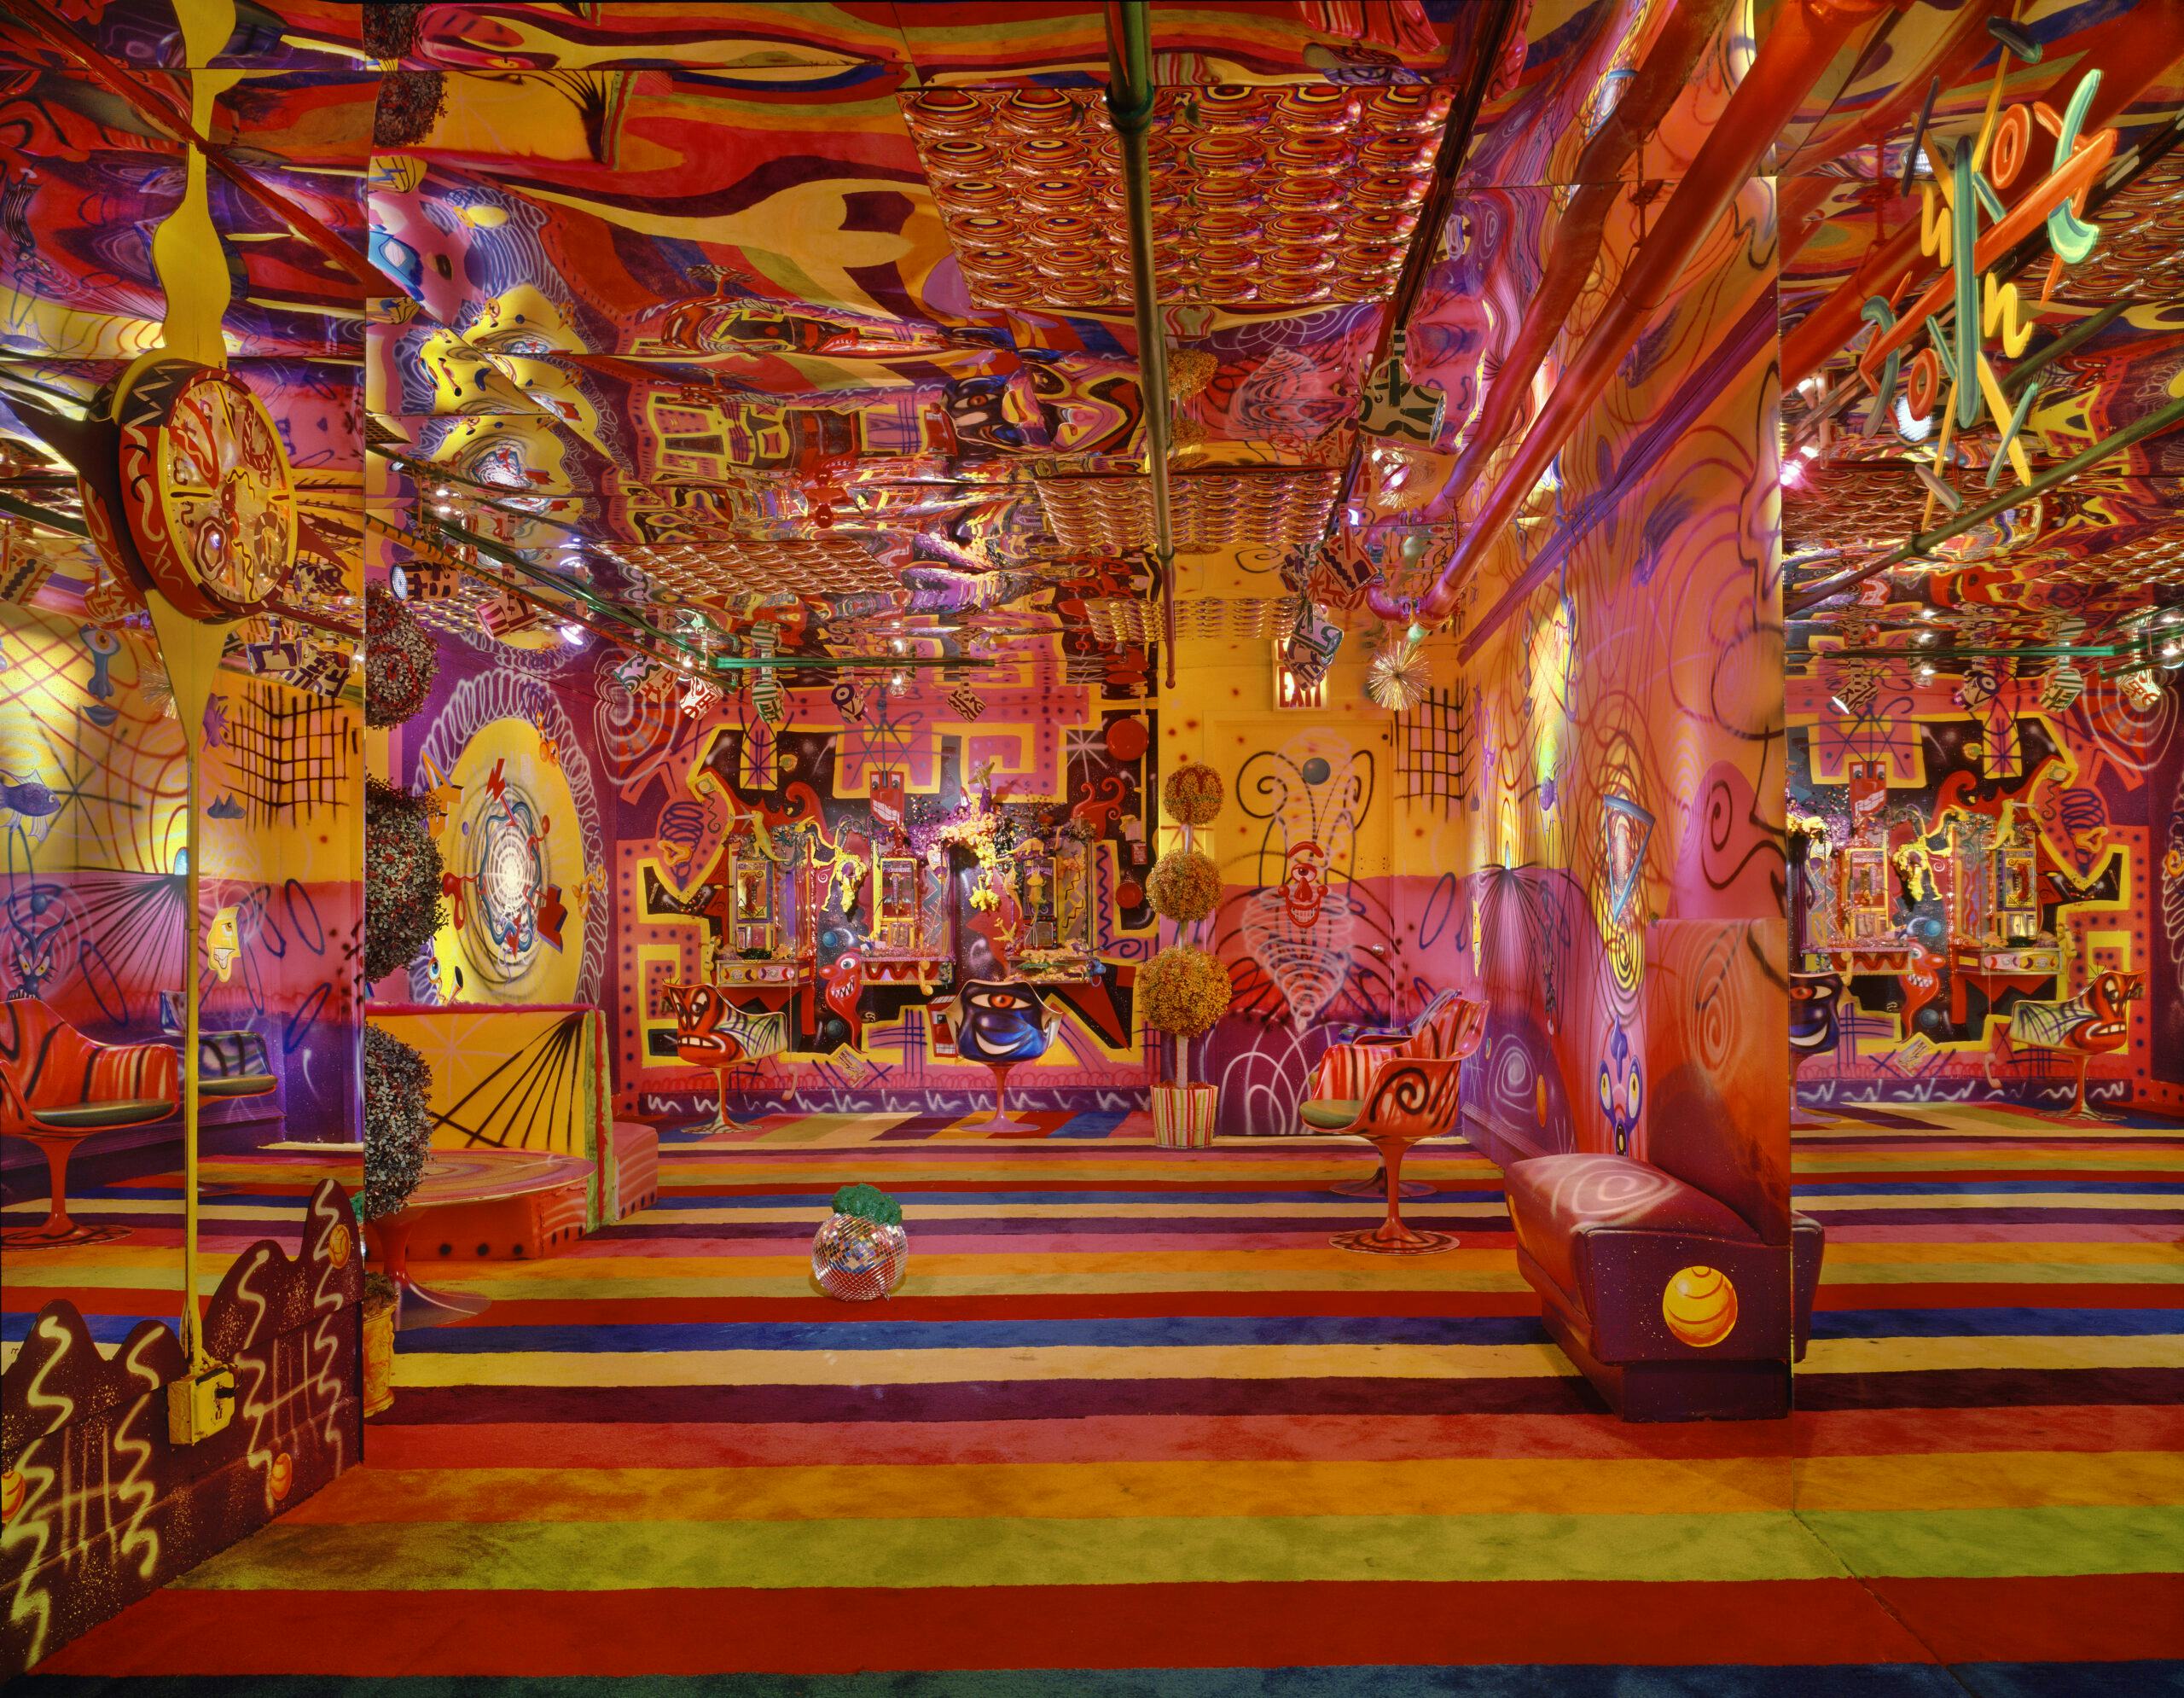 Palladium, interieur door Arata Isozaki. Kunst door Kenny Scharf. Beeld door Timothy Hursley